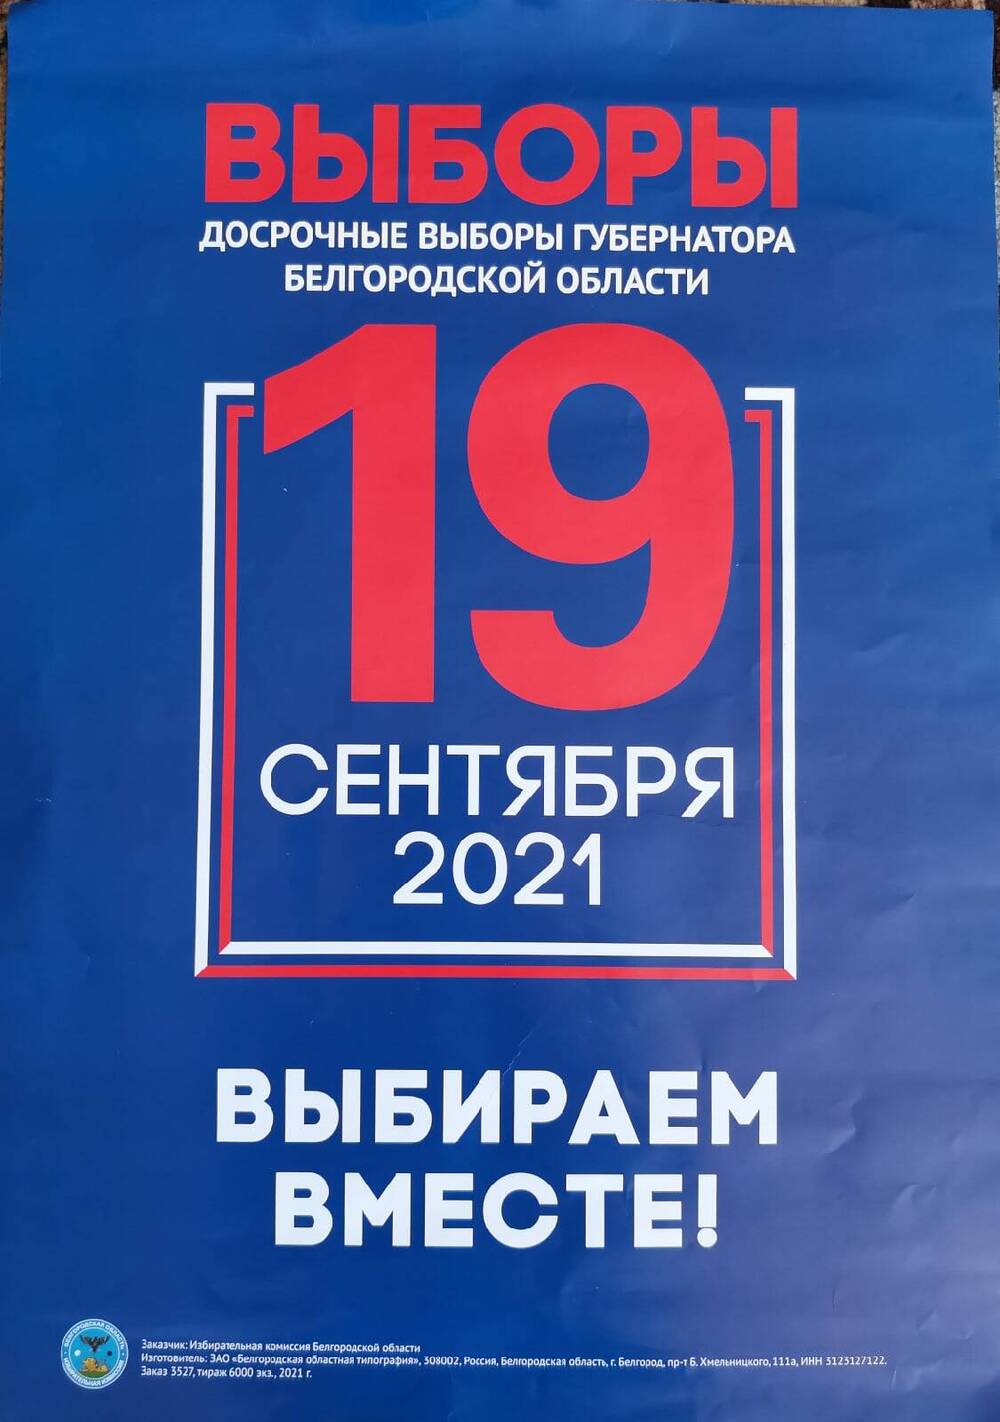 Плакат информационный «Досрочные выборы губернатора Белгородской области 19 сентября 2021 года